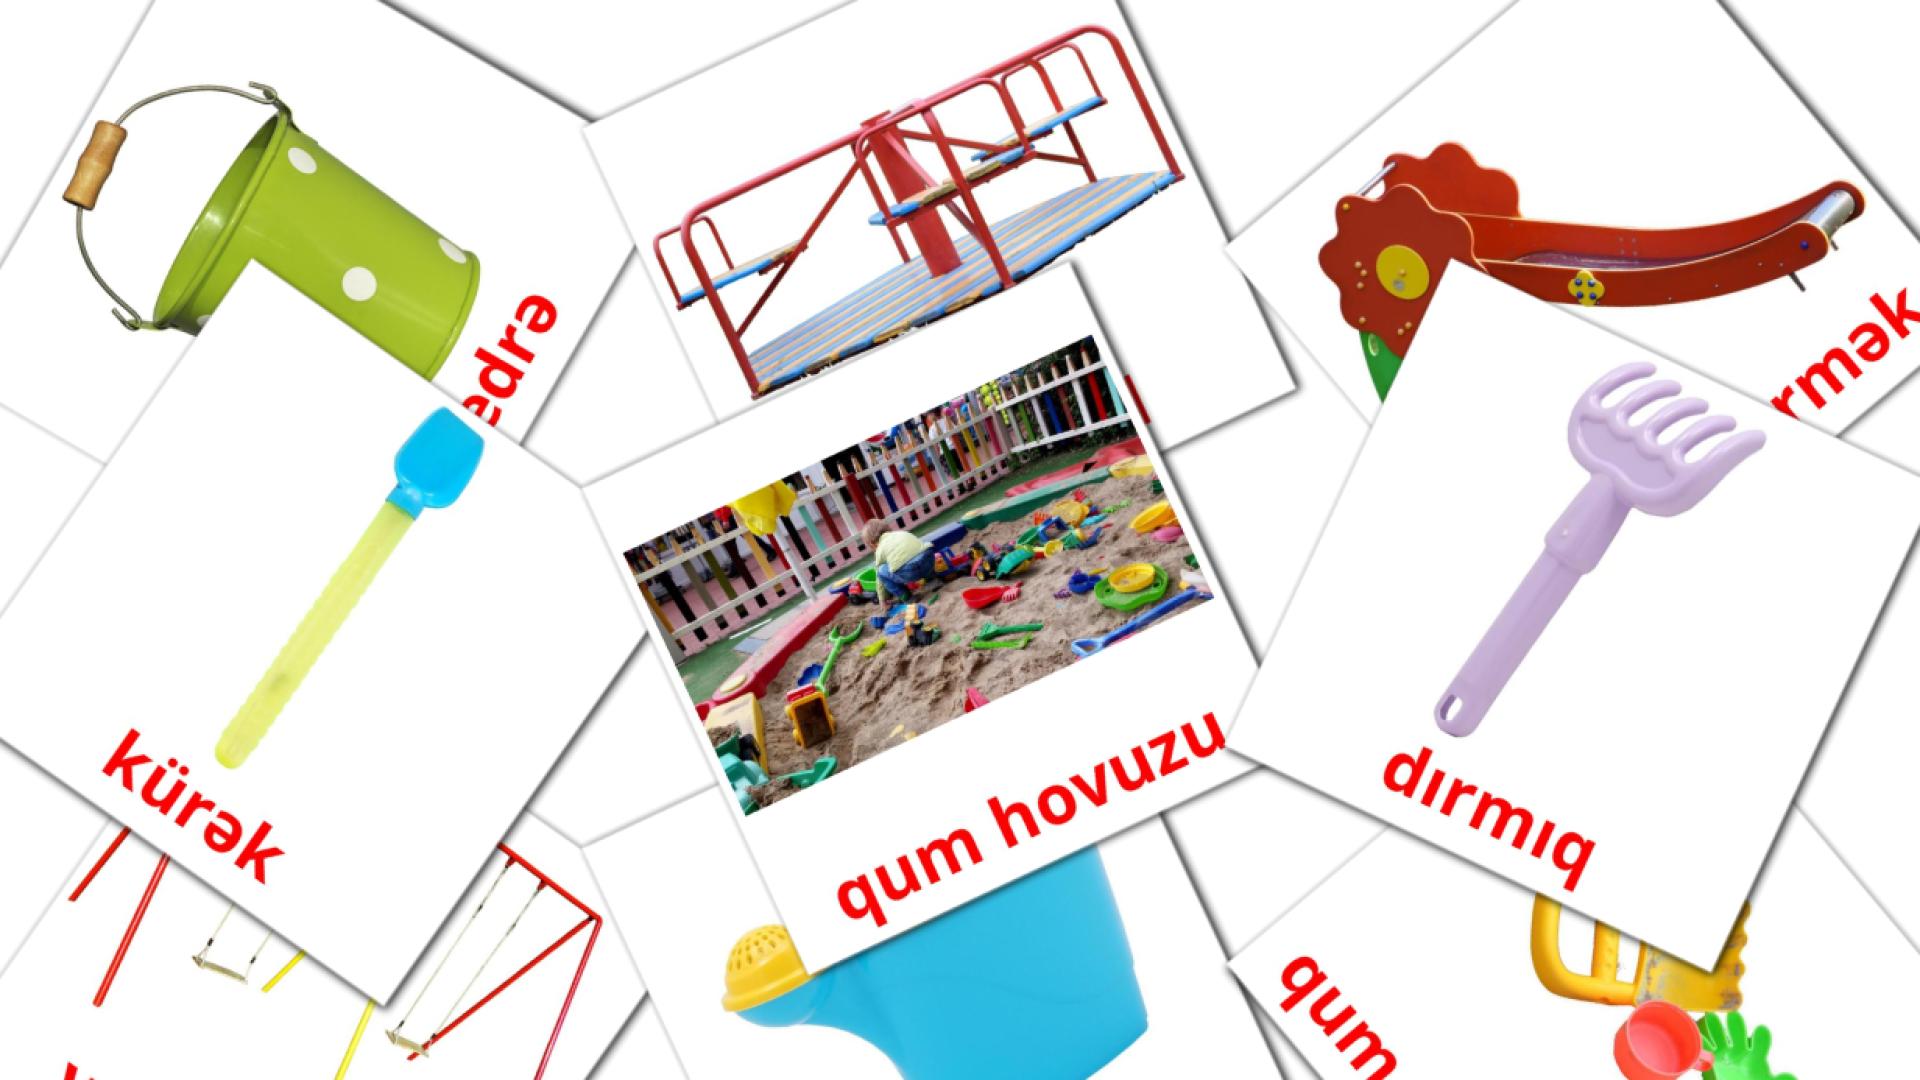 Speelplaats - azerbeidzjaanse woordenschatkaarten